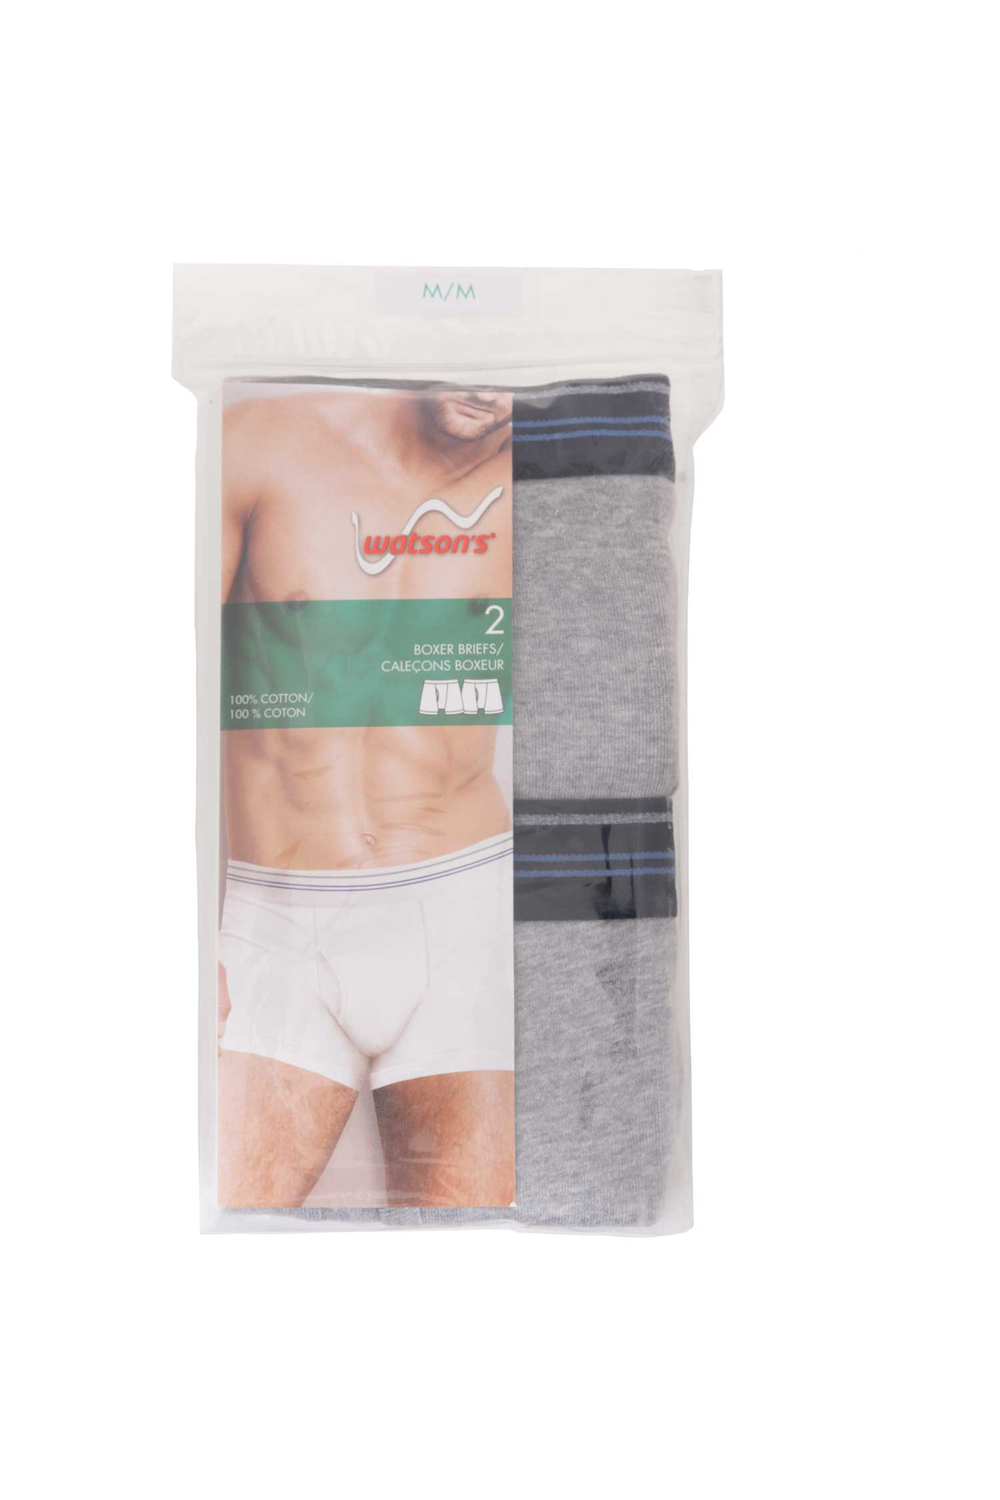 Watson's - Men's 100% cotton underwear, 2 pack boxer briefs, grey, medium (M)